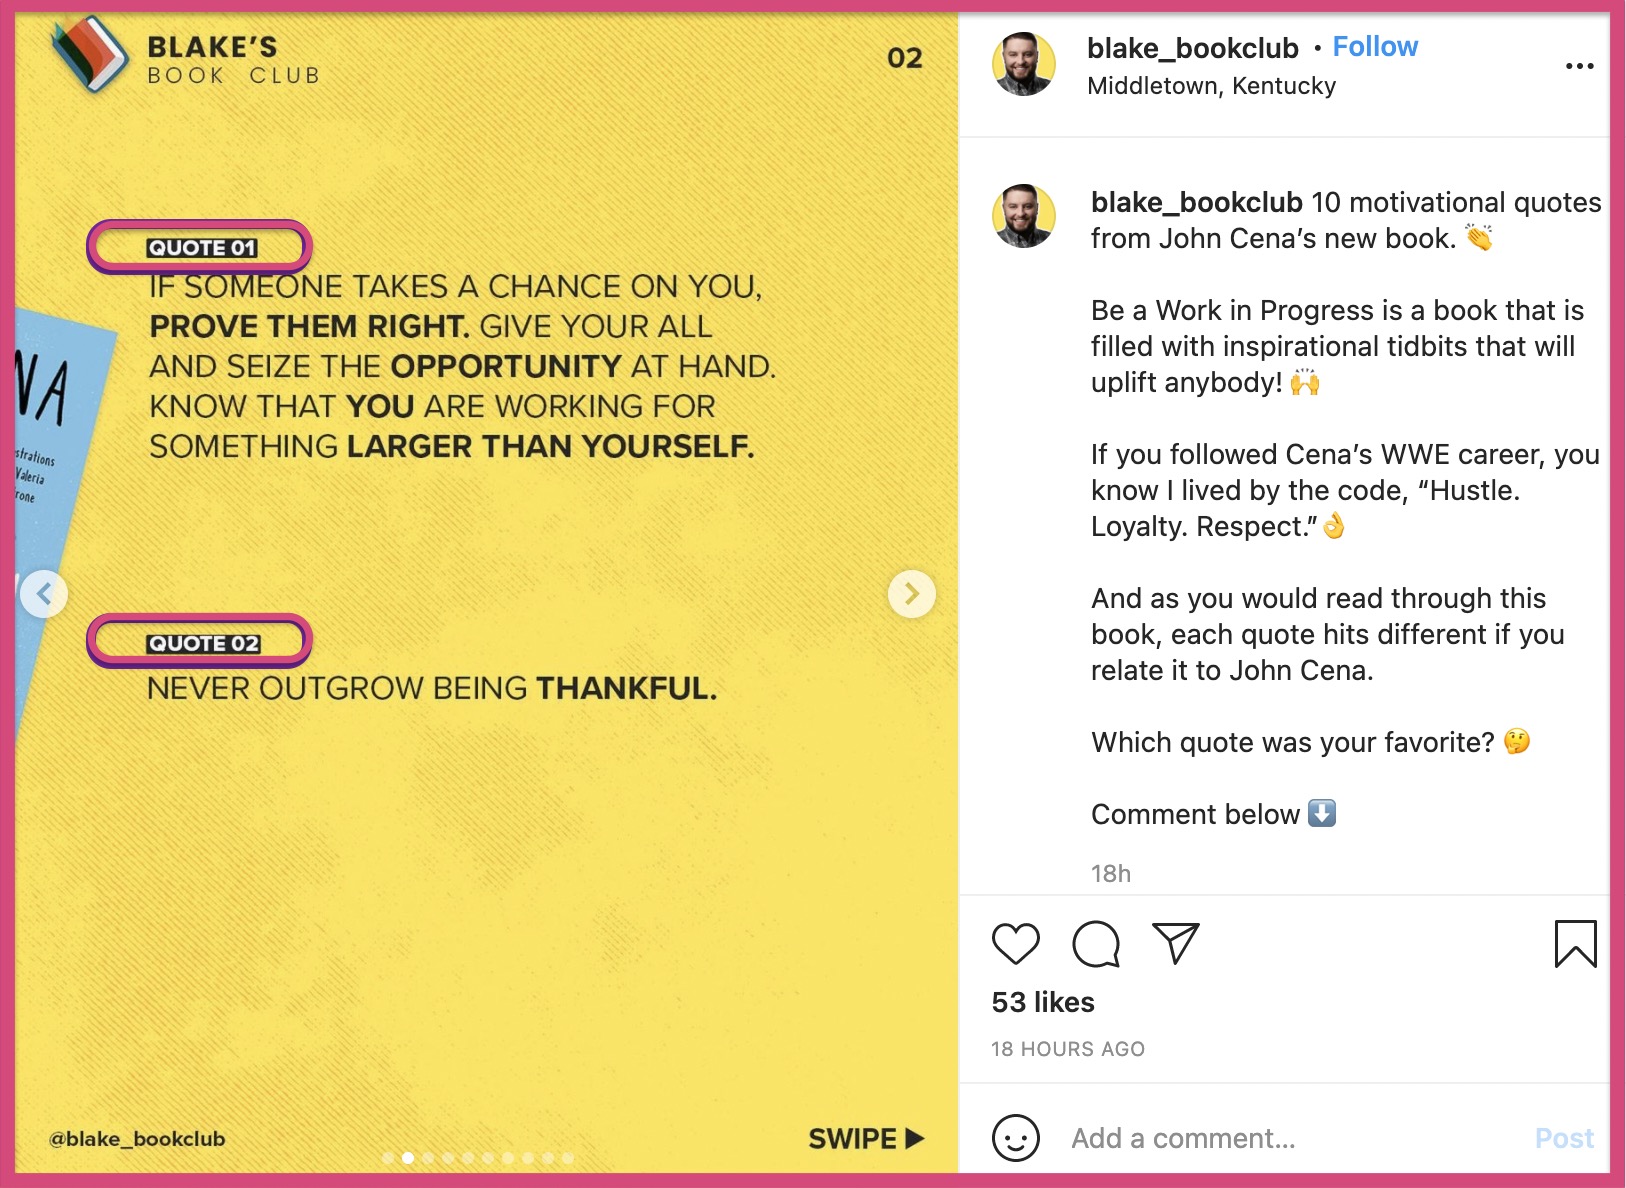 Slide 2 of the same Instagram carousel post